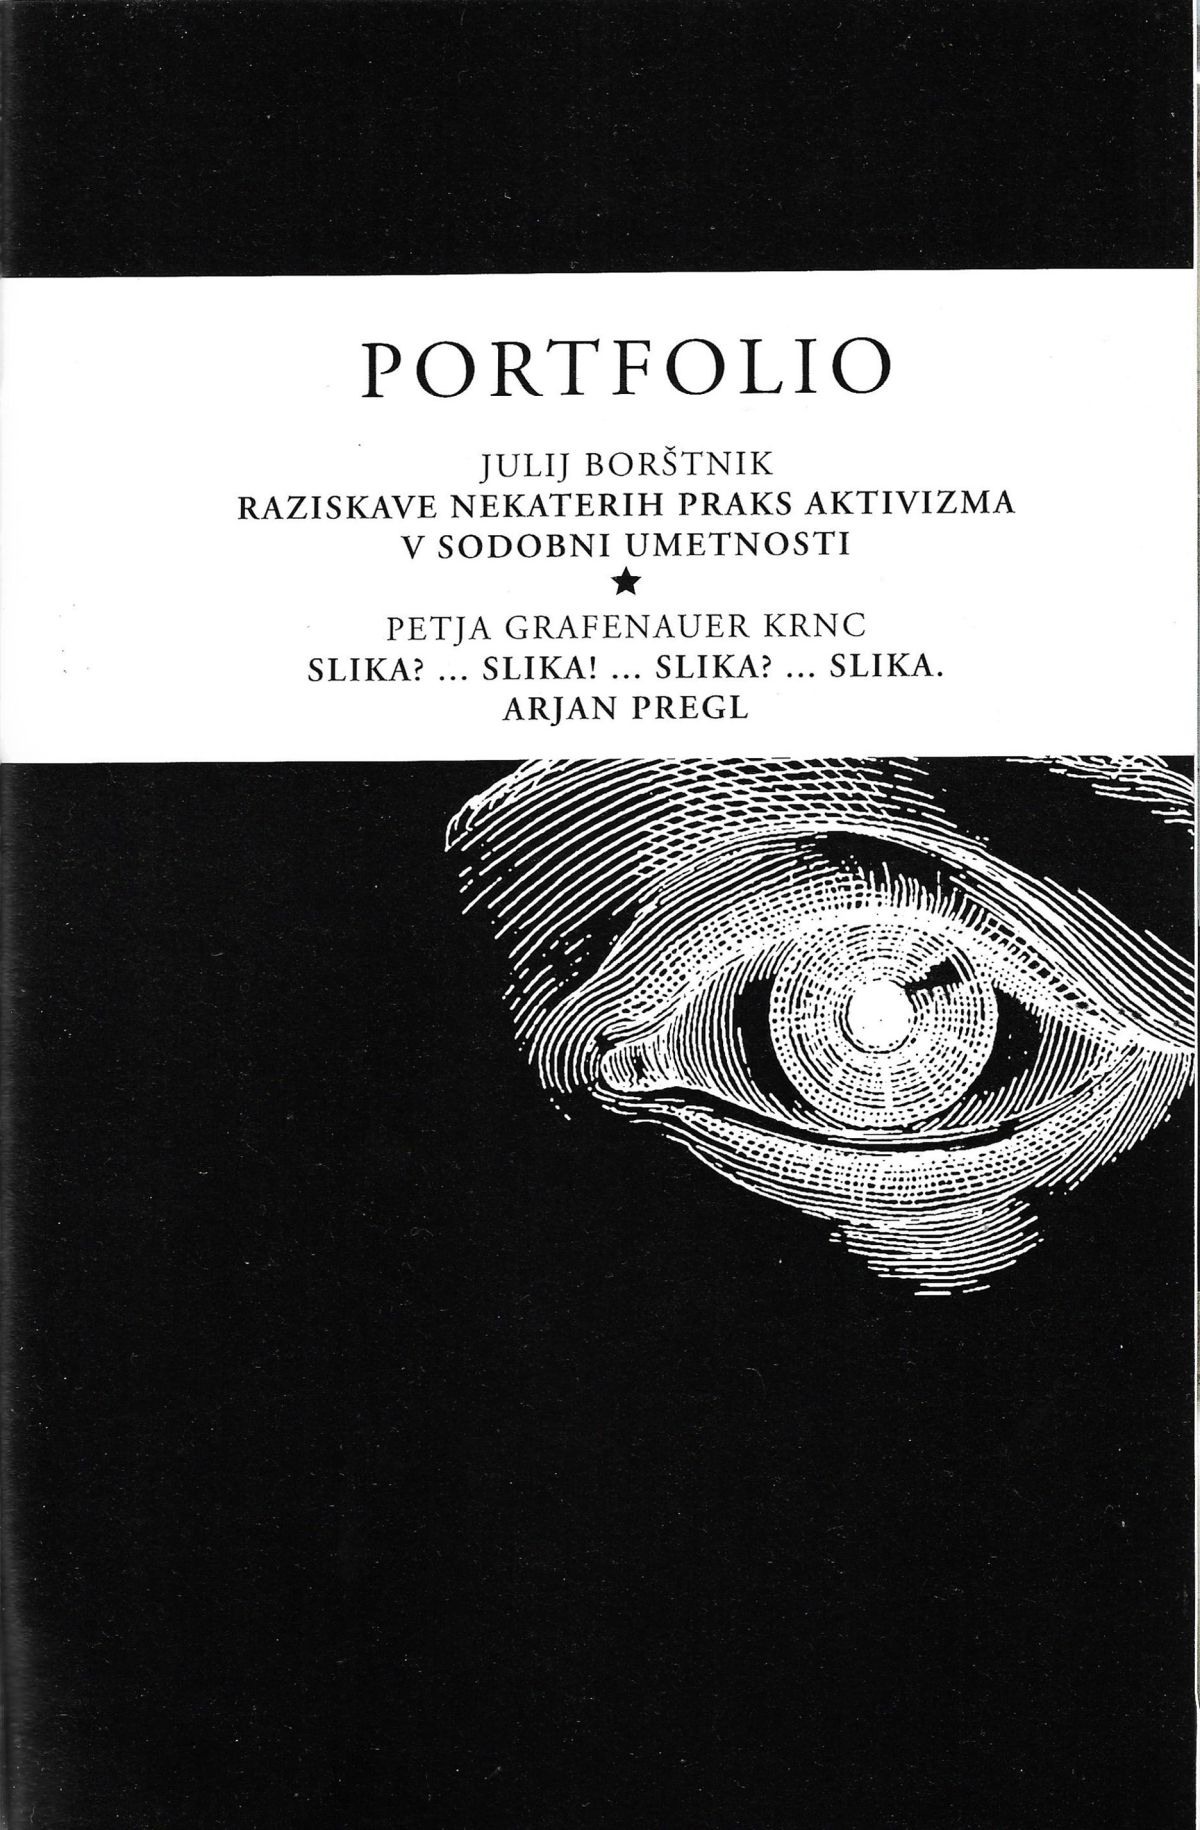 Objava diplomske naloge v reviji za zgodovino, antropologijo in književnost Borec 639-643, 2007.